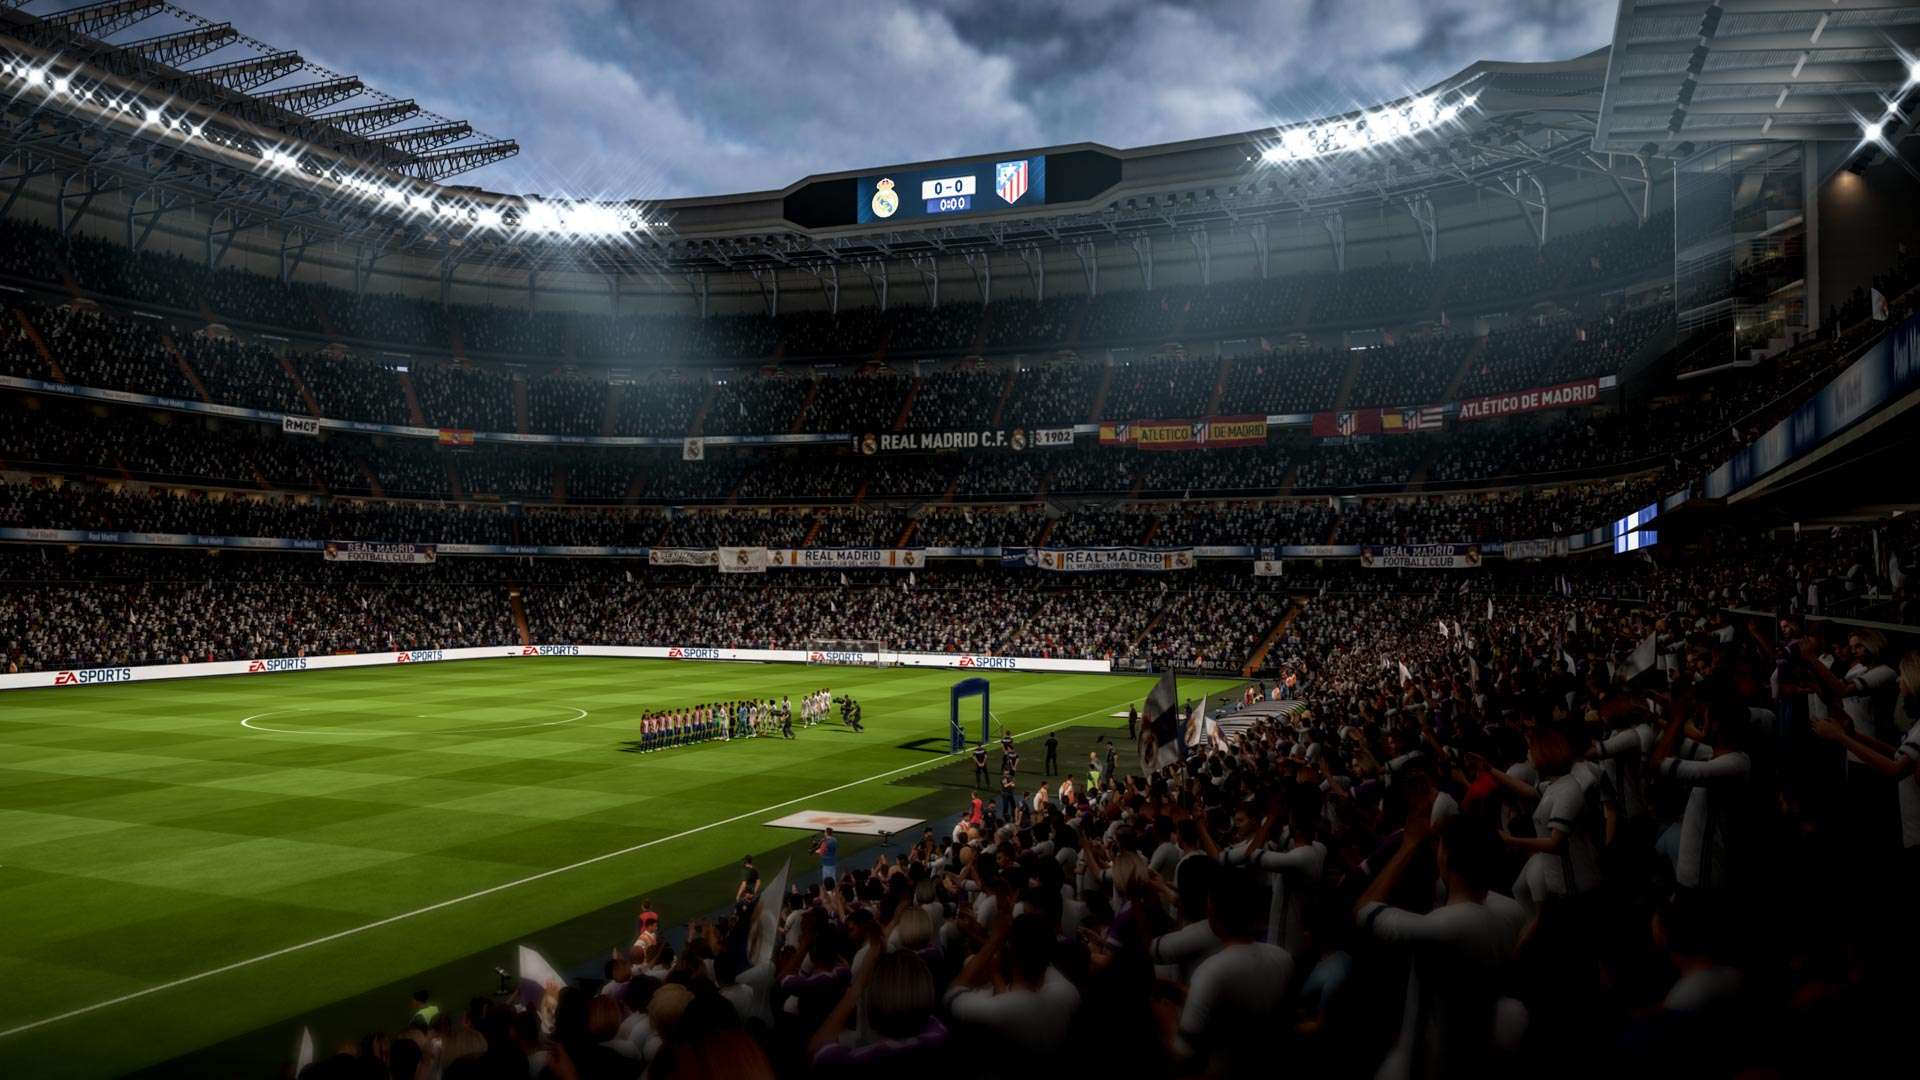 Disponible un nuevo parche para FIFA 18